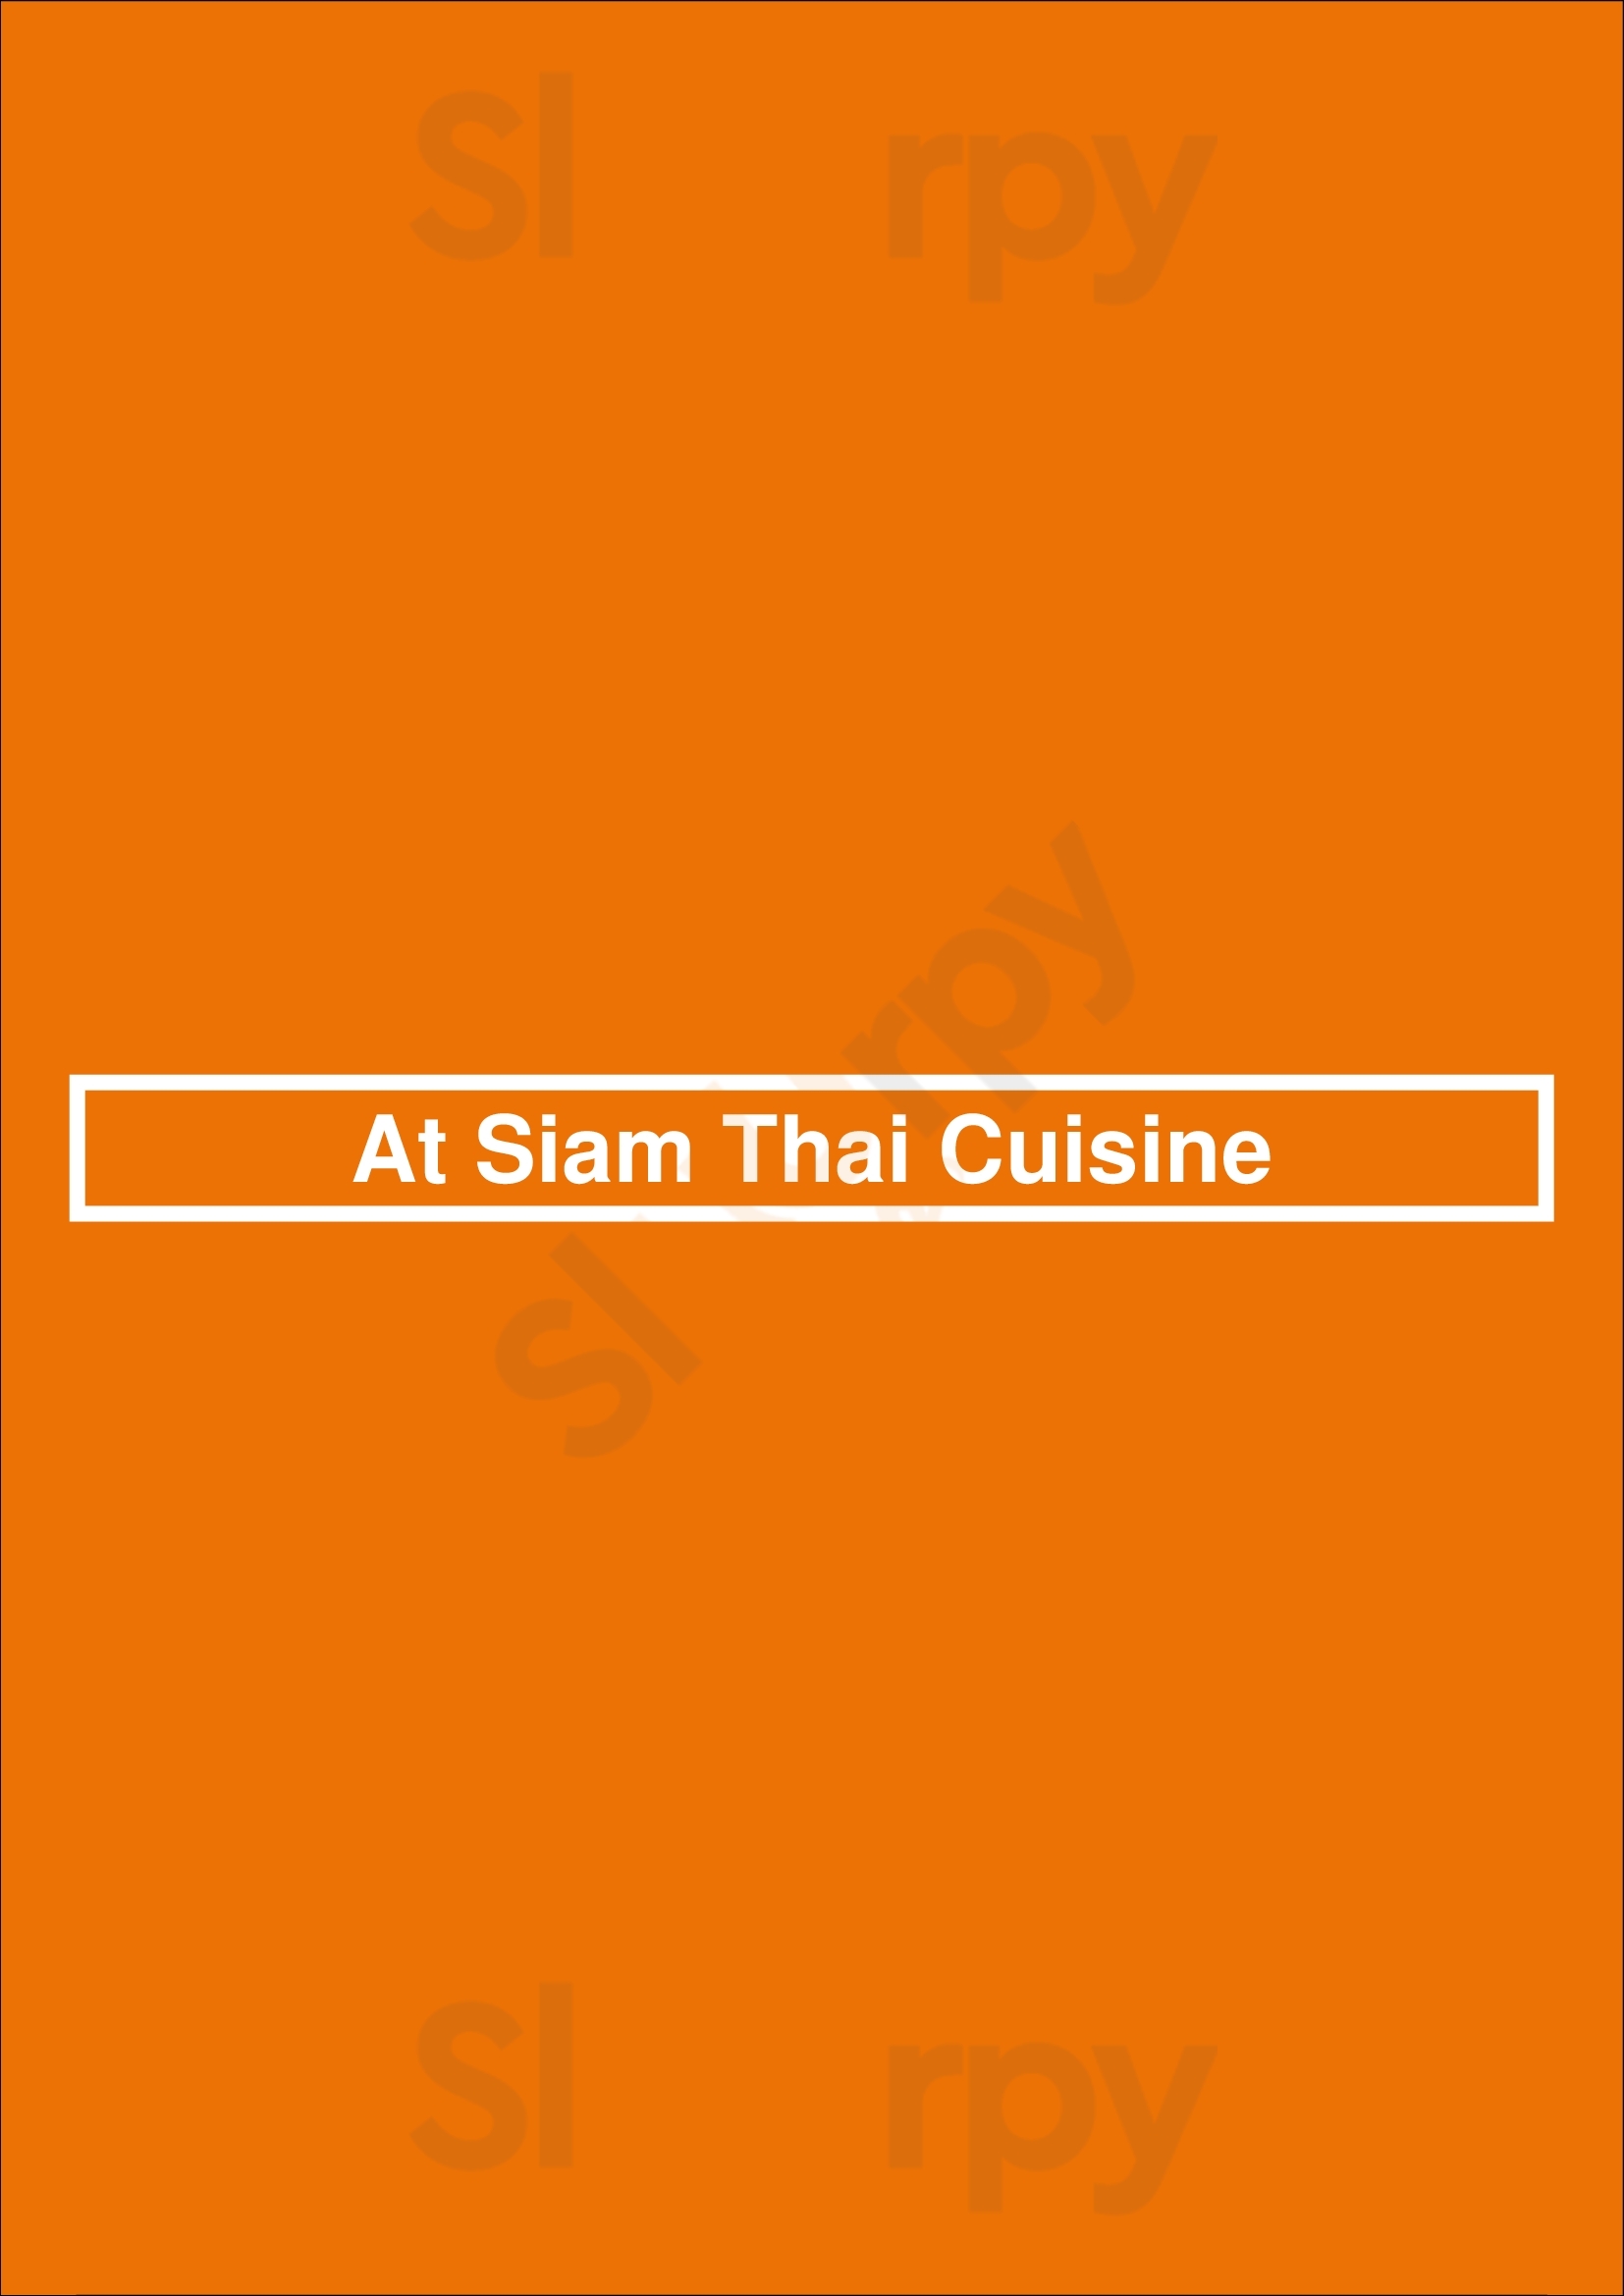 At Siam Thai Cuisine Orlando Menu - 1